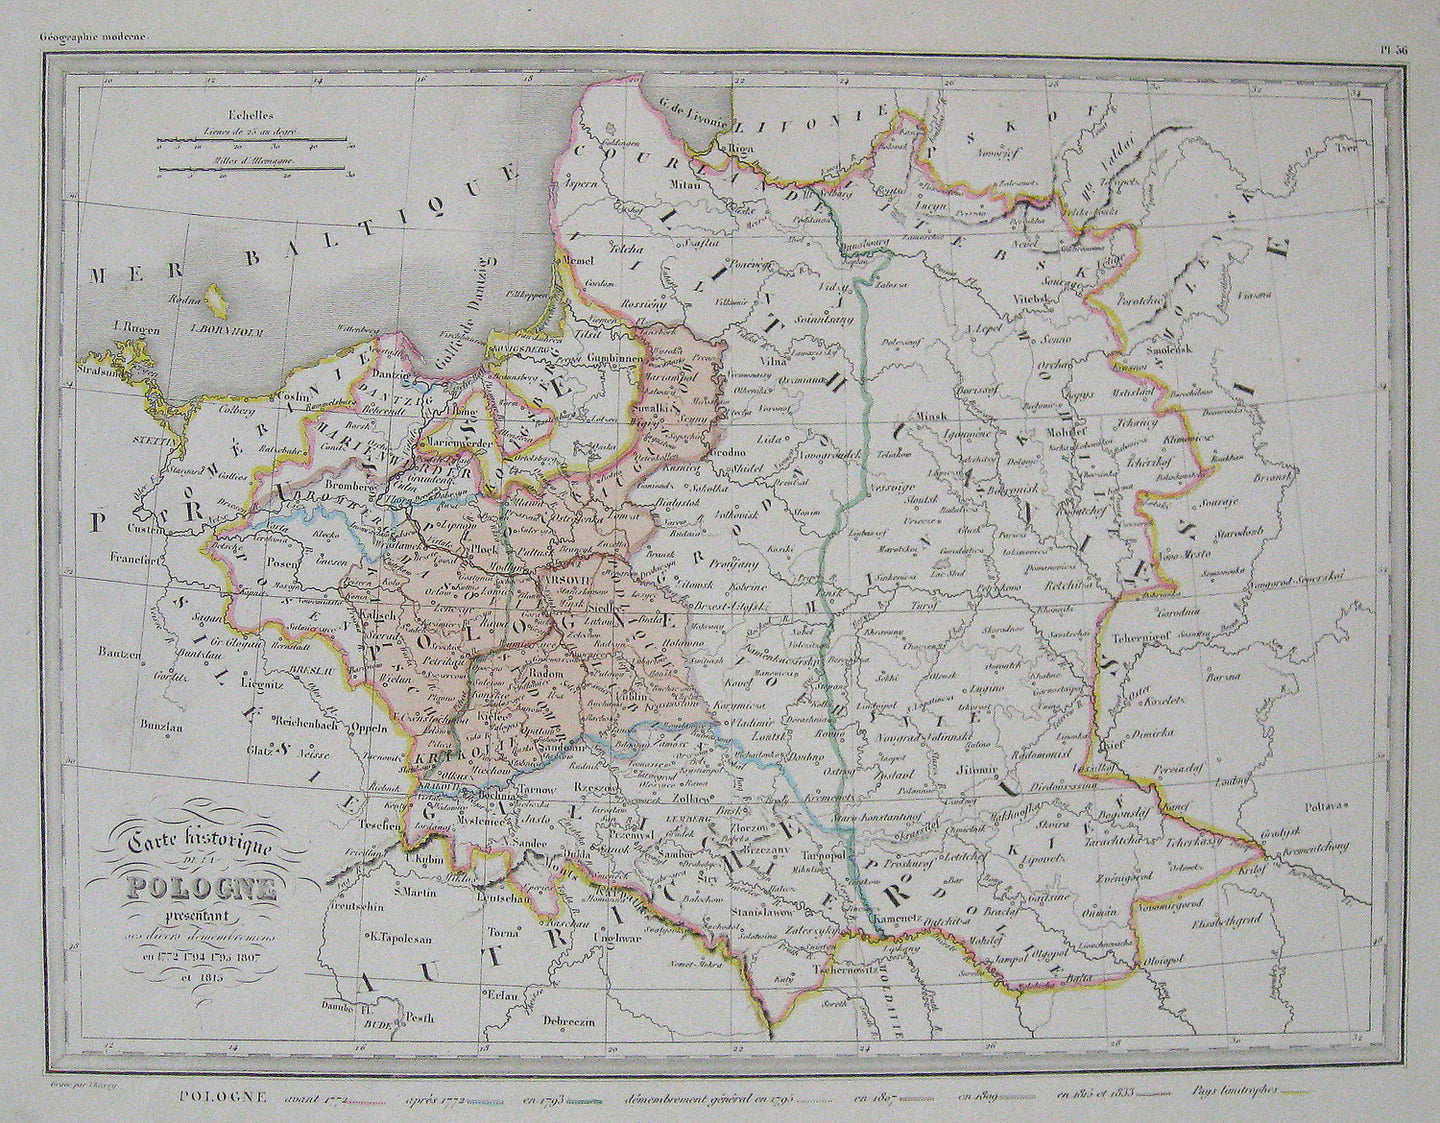 Antique-Hand-Colored-Map-Carte-Historique-de-la-Pologne-Poland-Poland--1842-Malte-Brun-Maps-Of-Antiquity